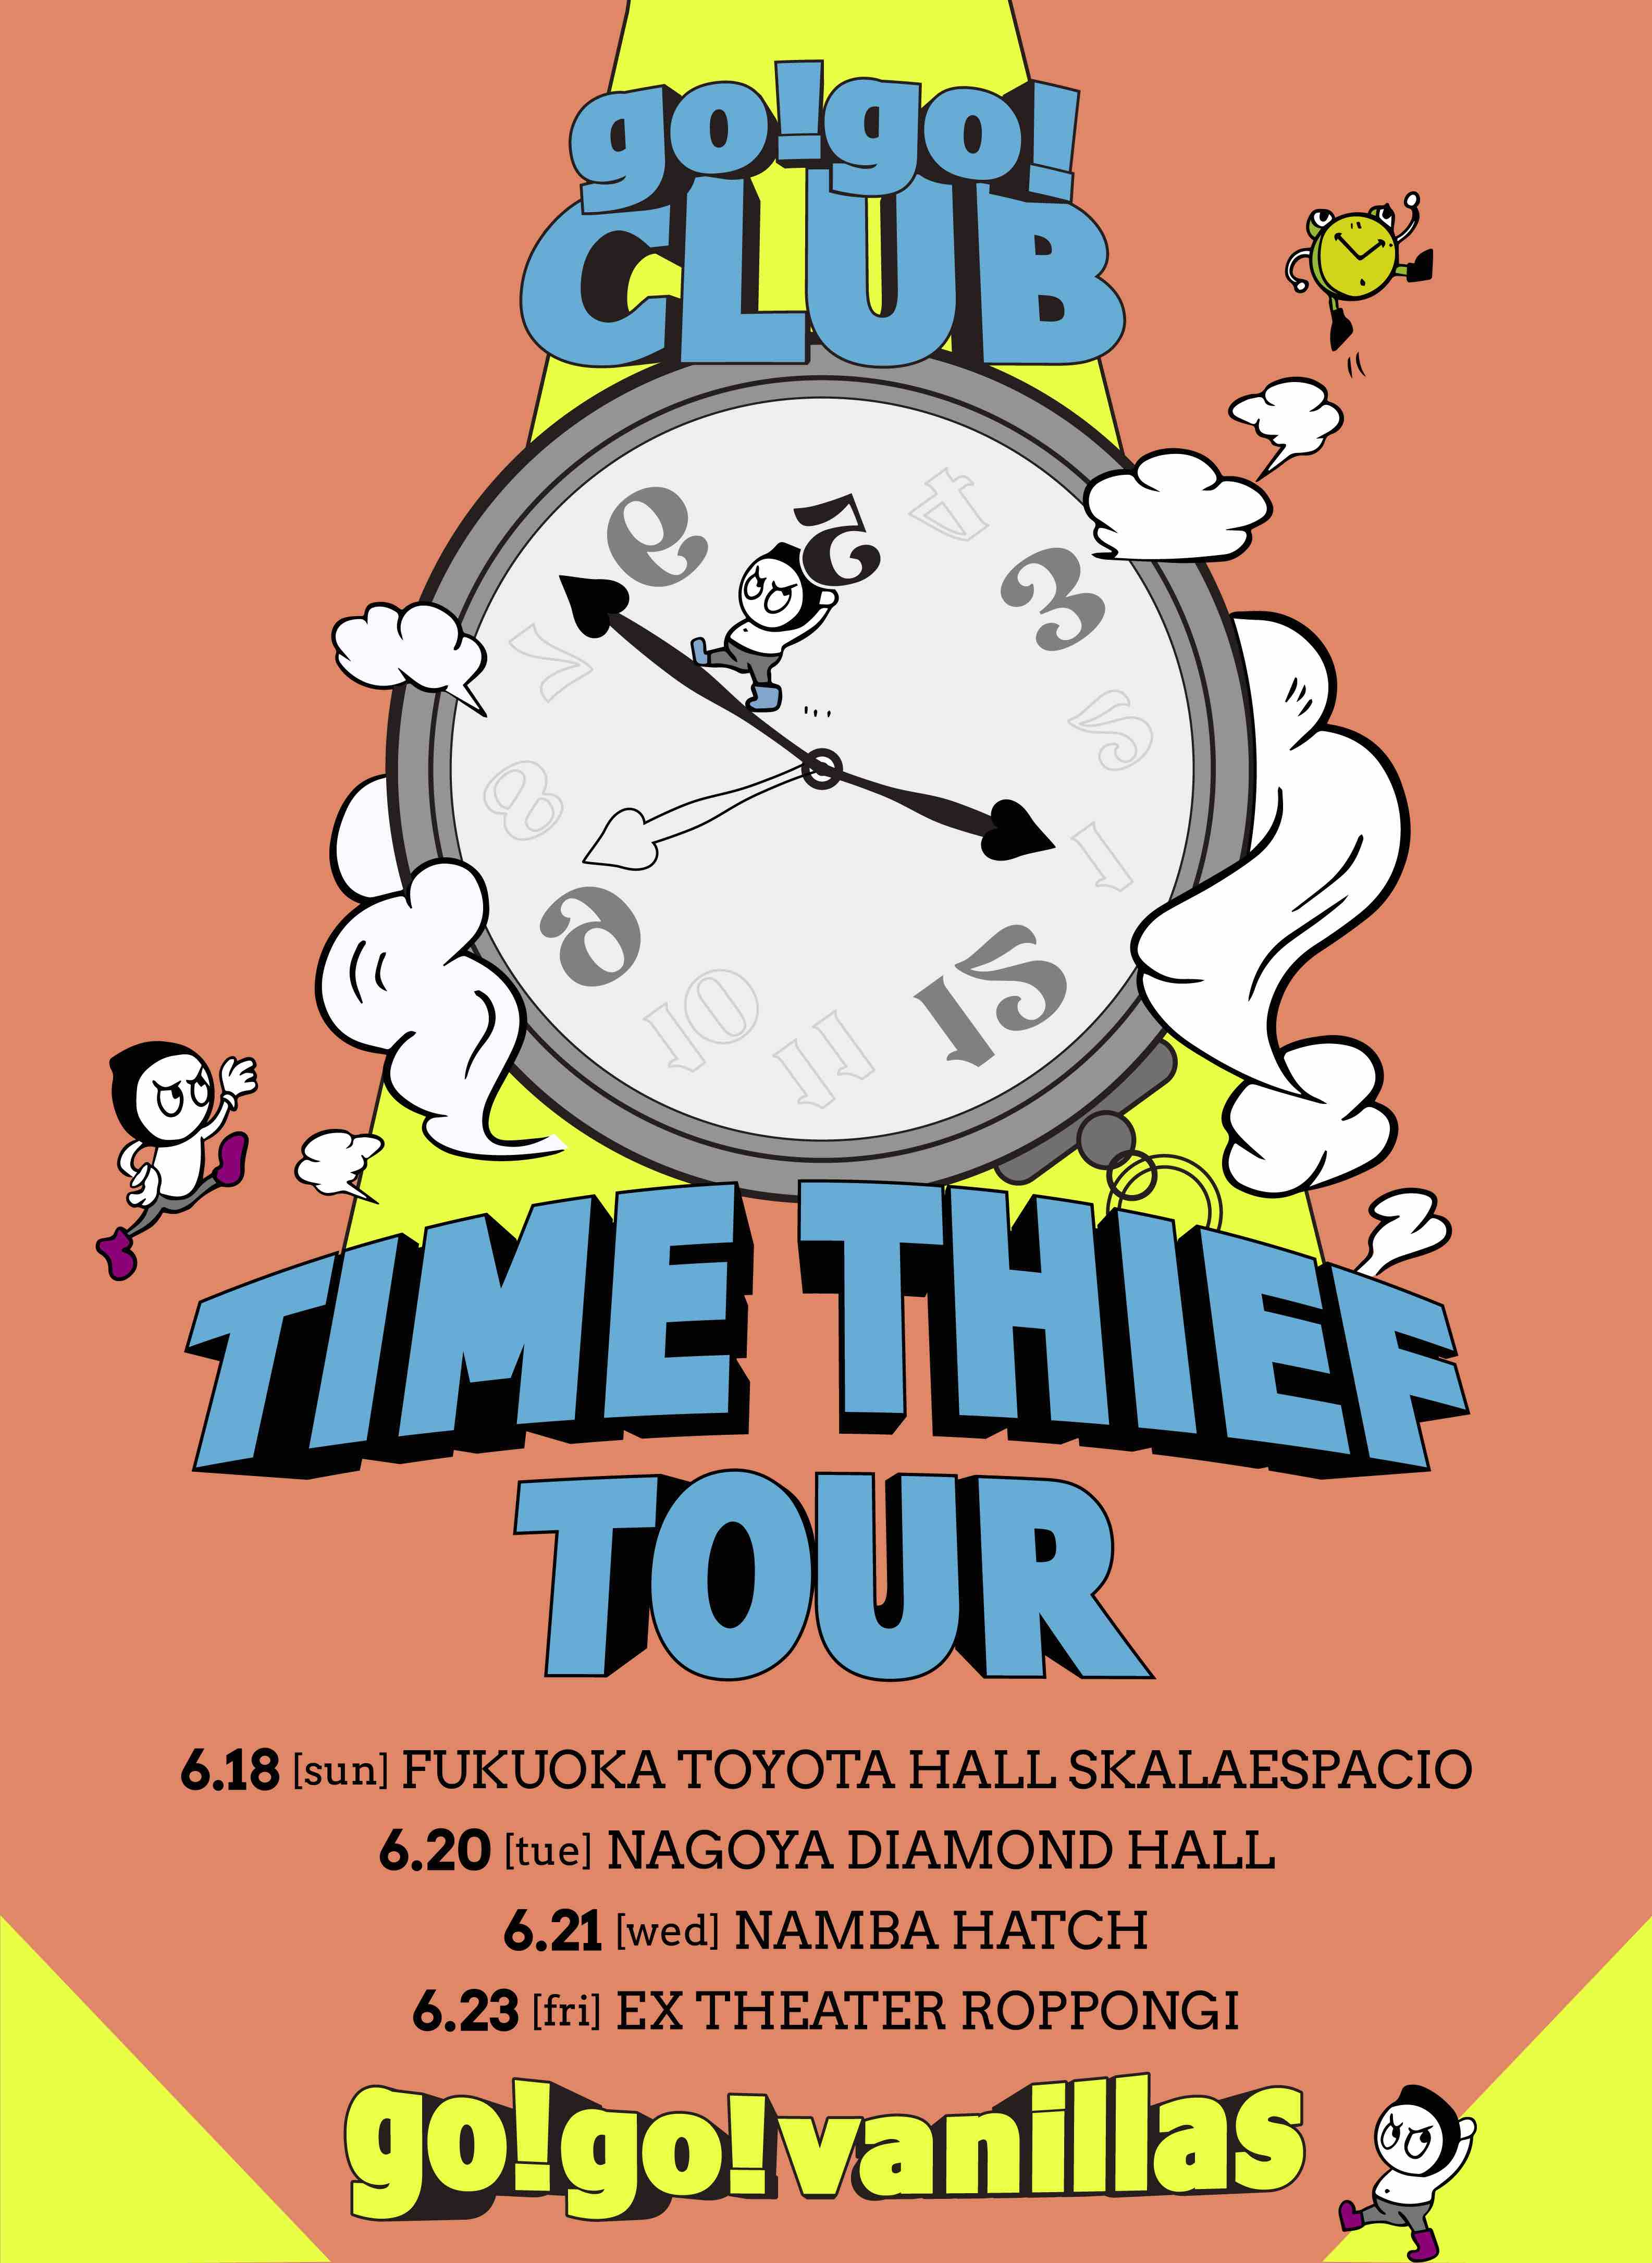 名古屋 DIAMOND HALL <span class="live-title">go!go!CLUB 会員限定ライブ「TIME THIEF TOUR」</span>